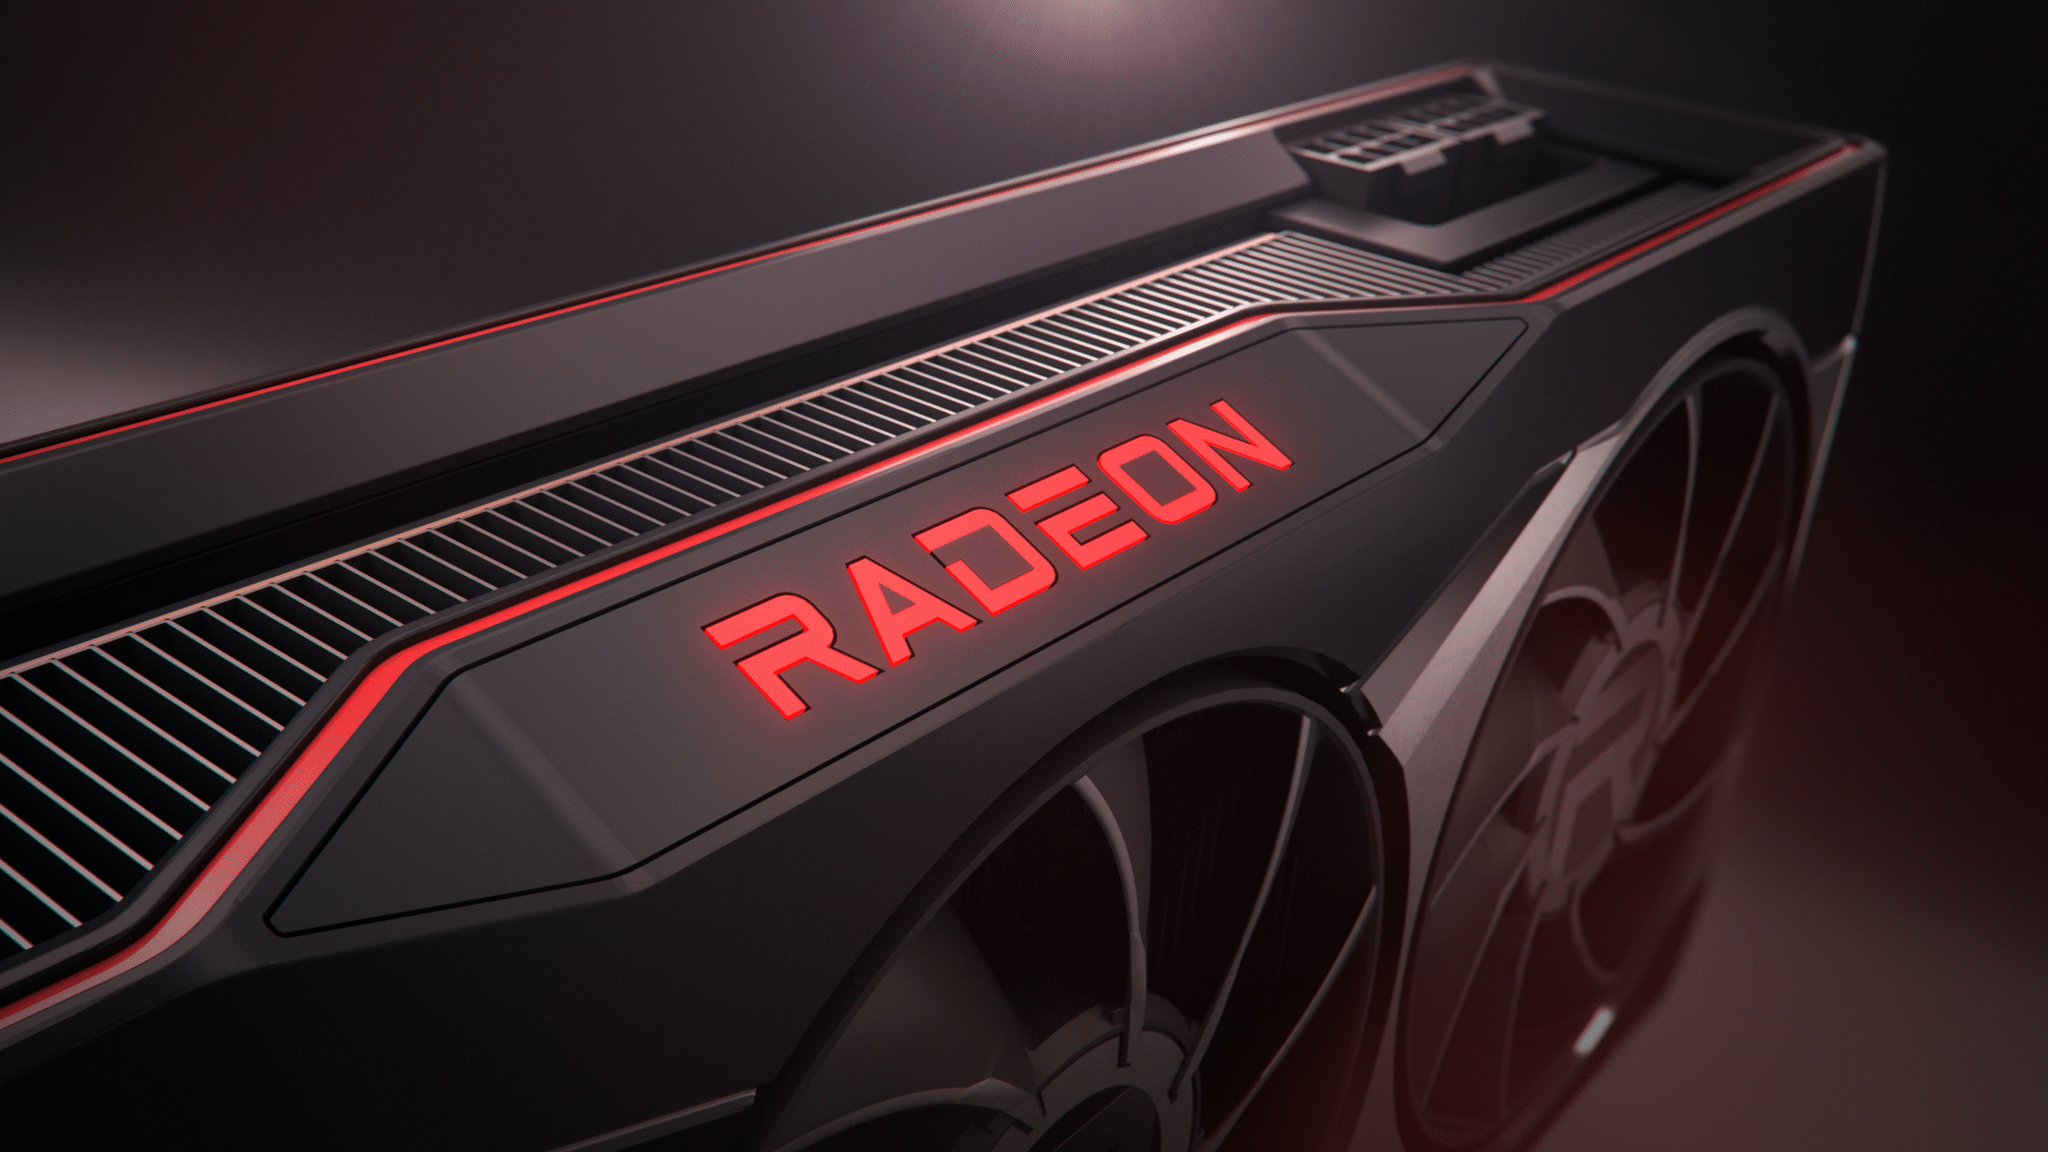 AMD promete mais desempenho da estação de trabalho de seu driver RadeonSI